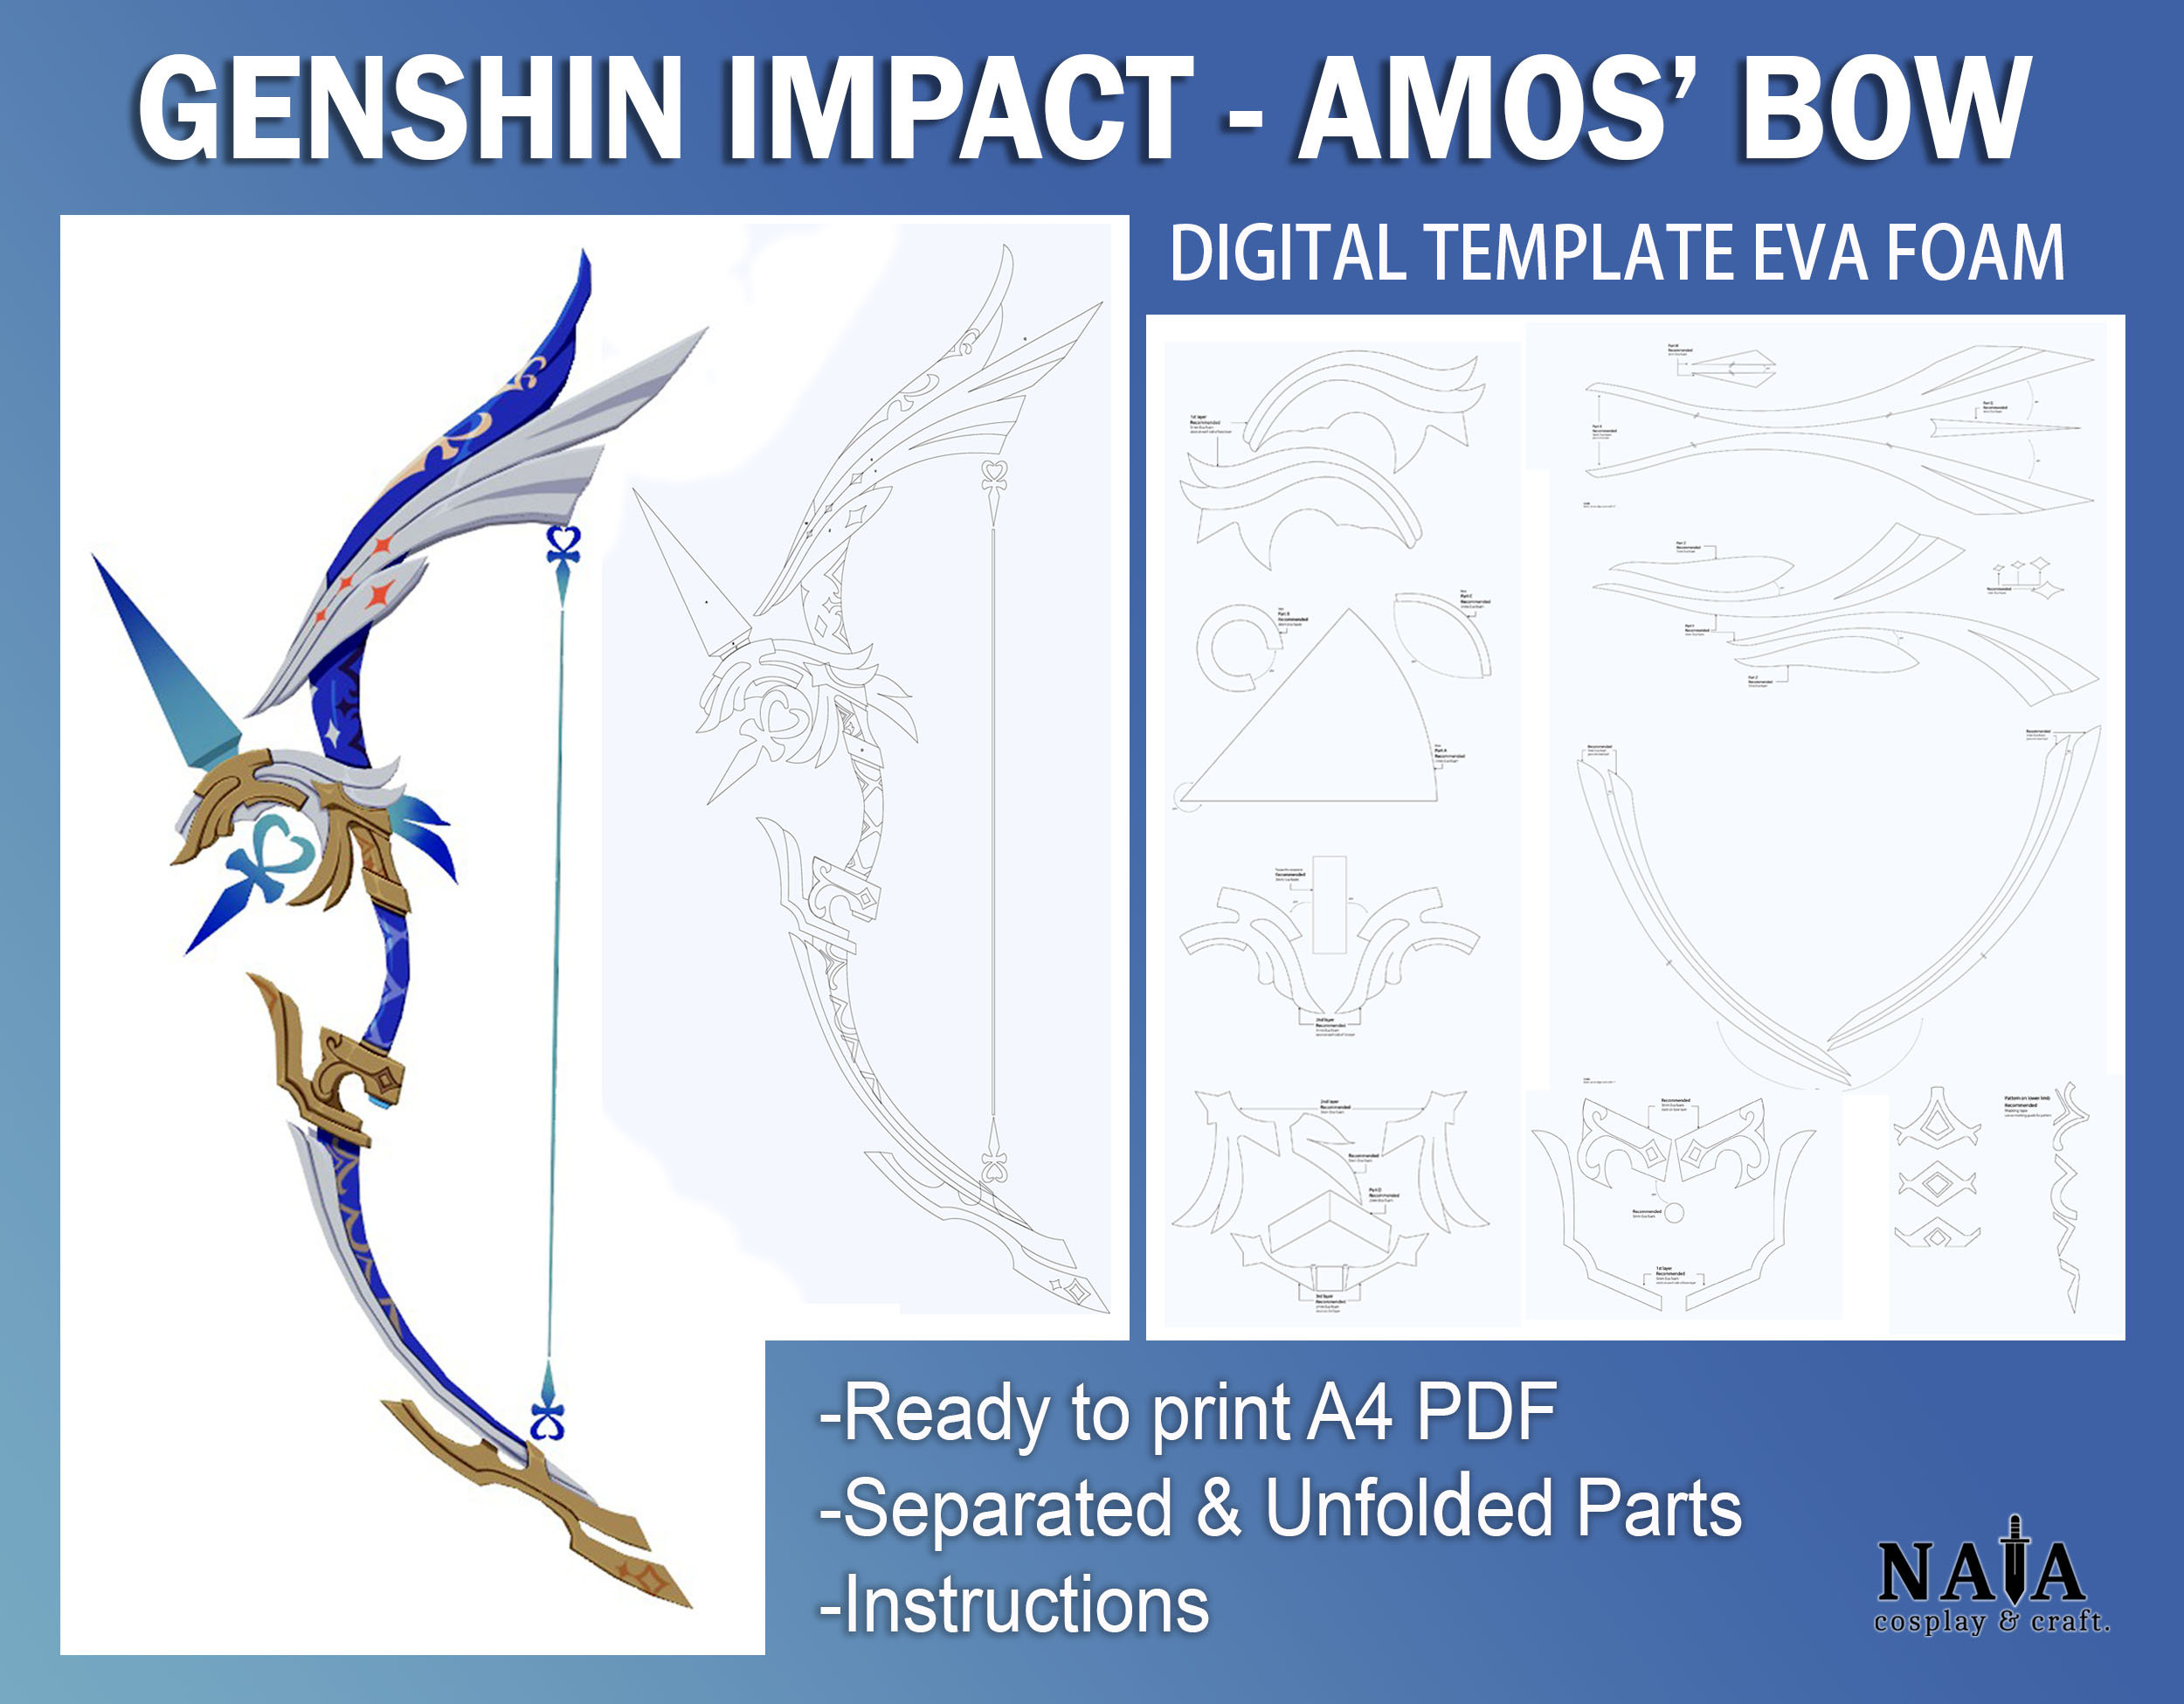 Genshin Impact: Como obter o Arco de Amós